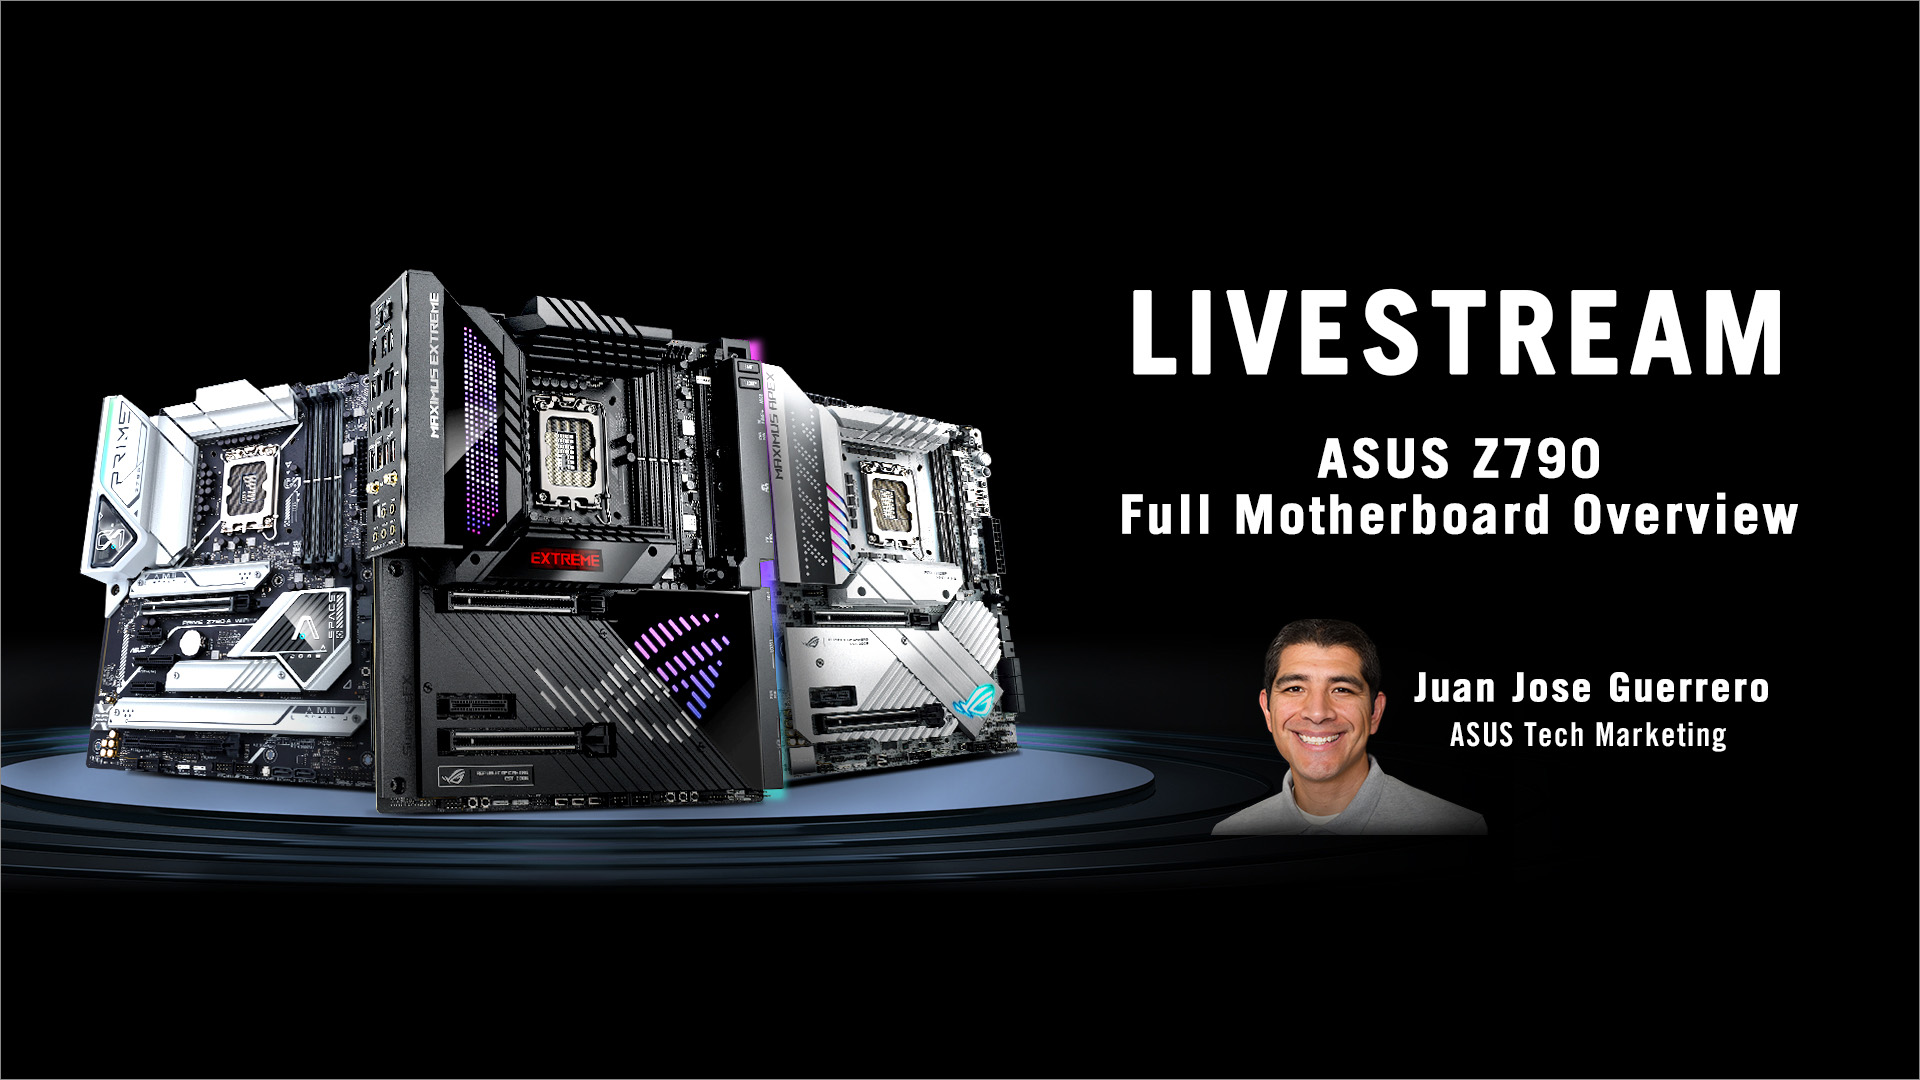 Afbeelding met livestream info en portret van ASUS Technical Marketing Juan Jose Guerrero